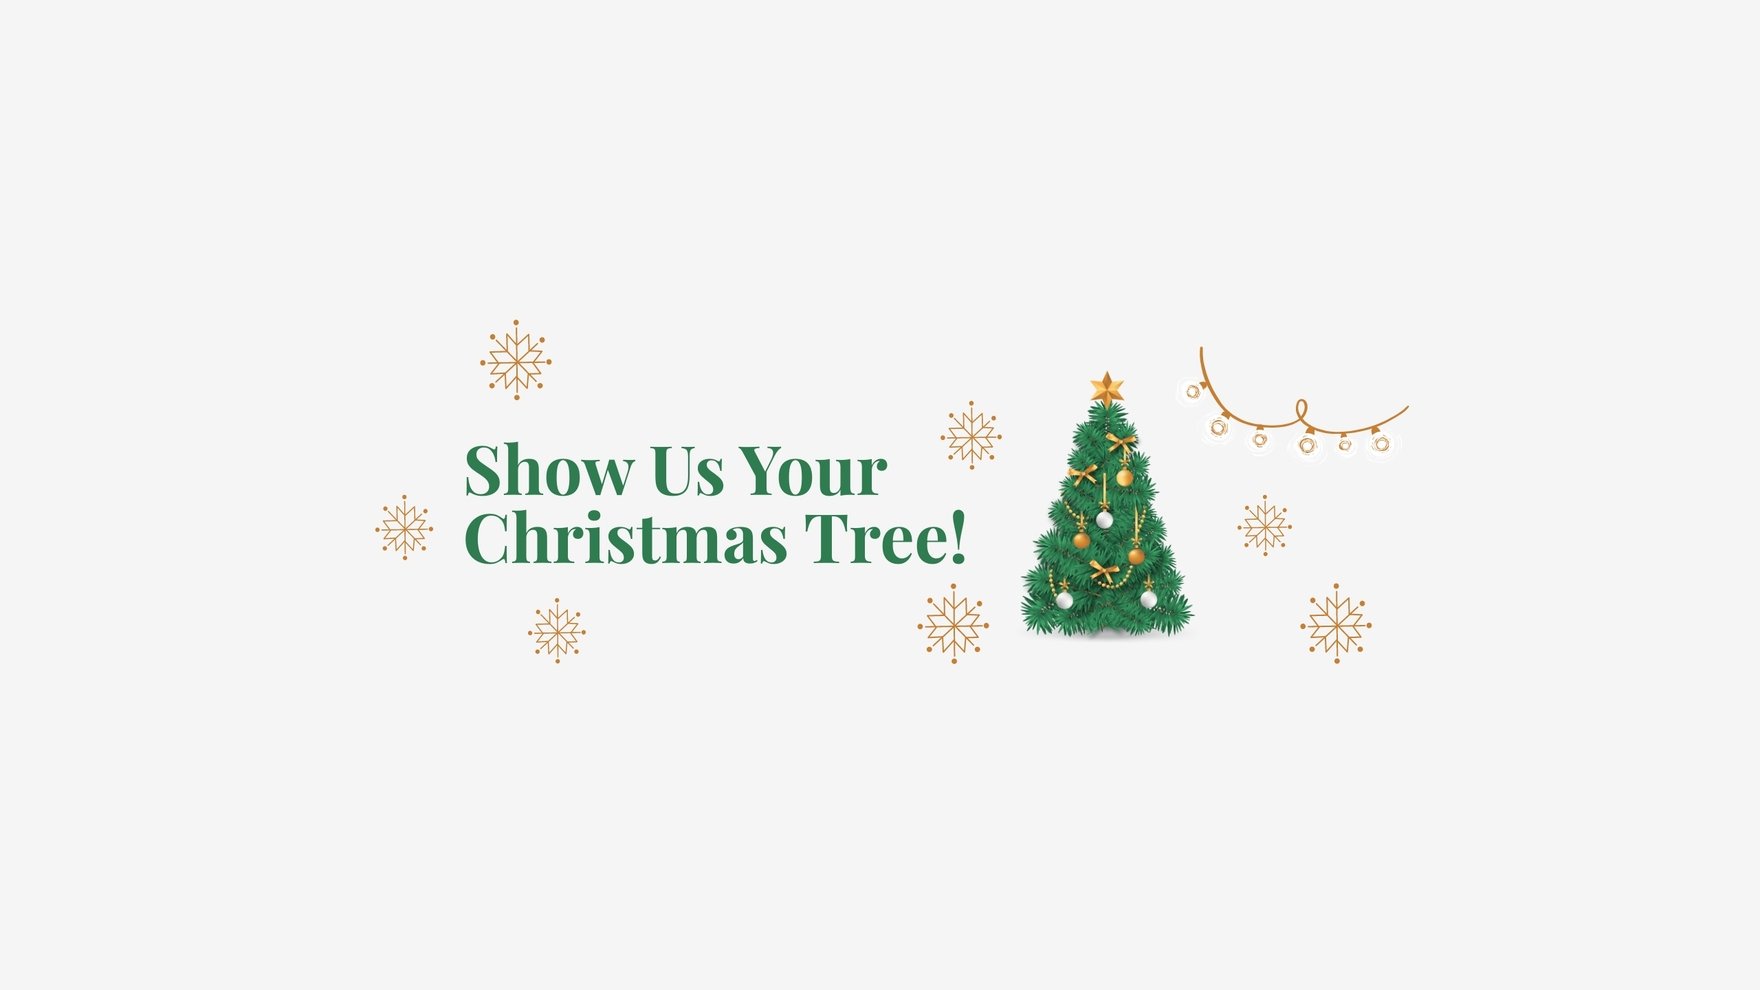 Hãy truy cập để tận hưởng mẫu Banner Youtube miễn phí với chủ đề cây thông Giáng sinh đầy ấm áp và lãng mạn. Bạn sẽ cảm nhận được không khí Giáng sinh đang lan tỏa khắp nơi chỉ qua một cú click chuột.